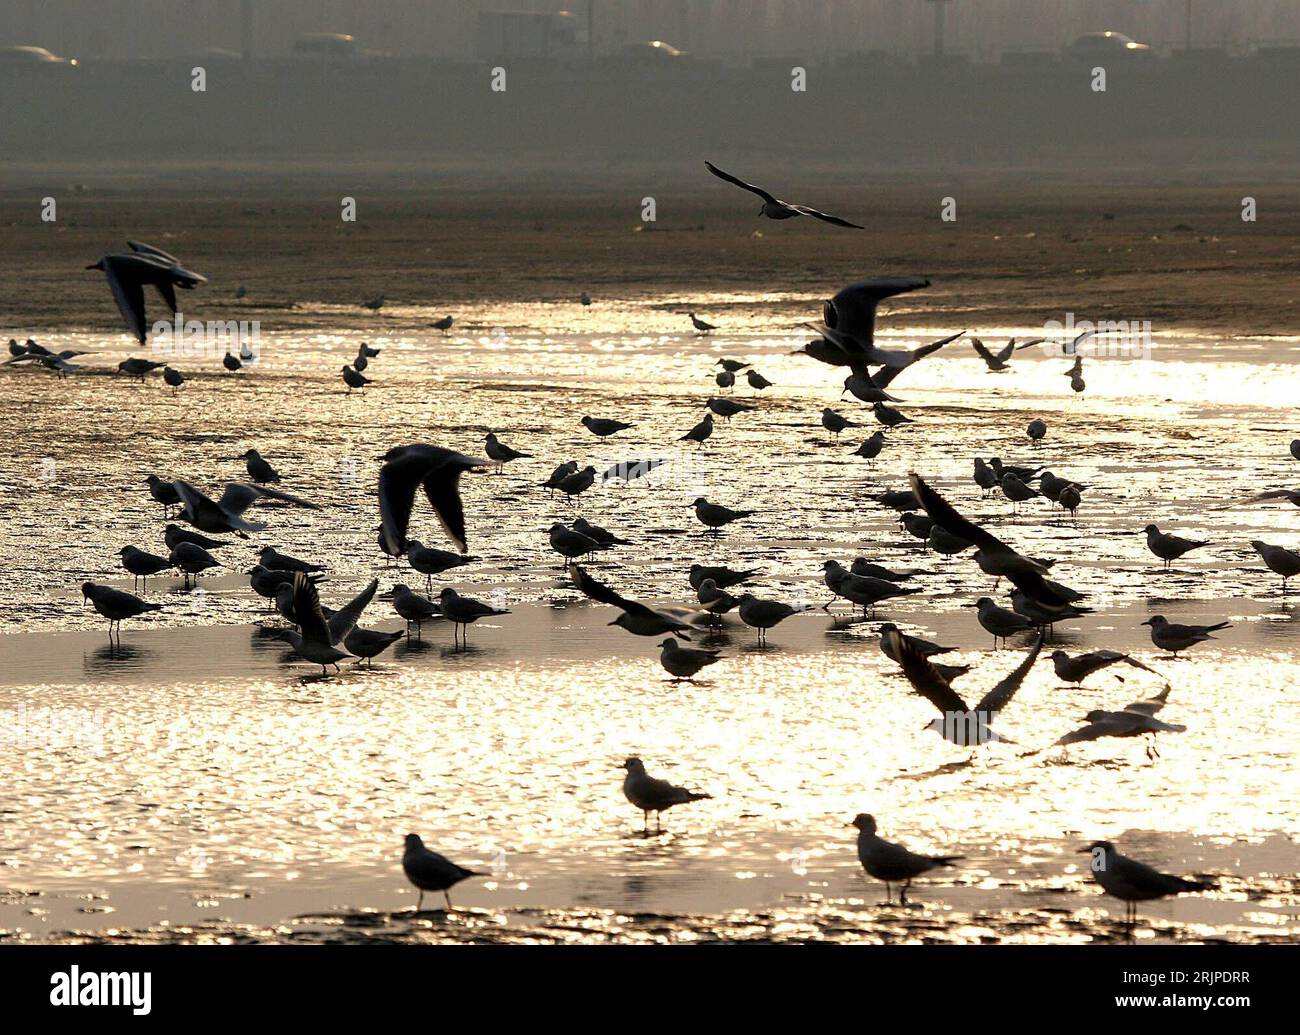 Bildnummer: 51160292 Datum: 15.03.2006 Copyright: imago/Xinhua Zugvögel kehren aus ihren Warmen Gefilden Zurück - Strand von Qinhuangdao - PUBLICATIONxNOTxINxCHN, Tiere; 2006, Qinhuangdao, Strände, , Möwe, Möwen, Zugvogel, Vögel, , quer, Kbdig, totale, Meer, Küste, Cina, , ; Aufnahmedatum geschätzt Foto Stock